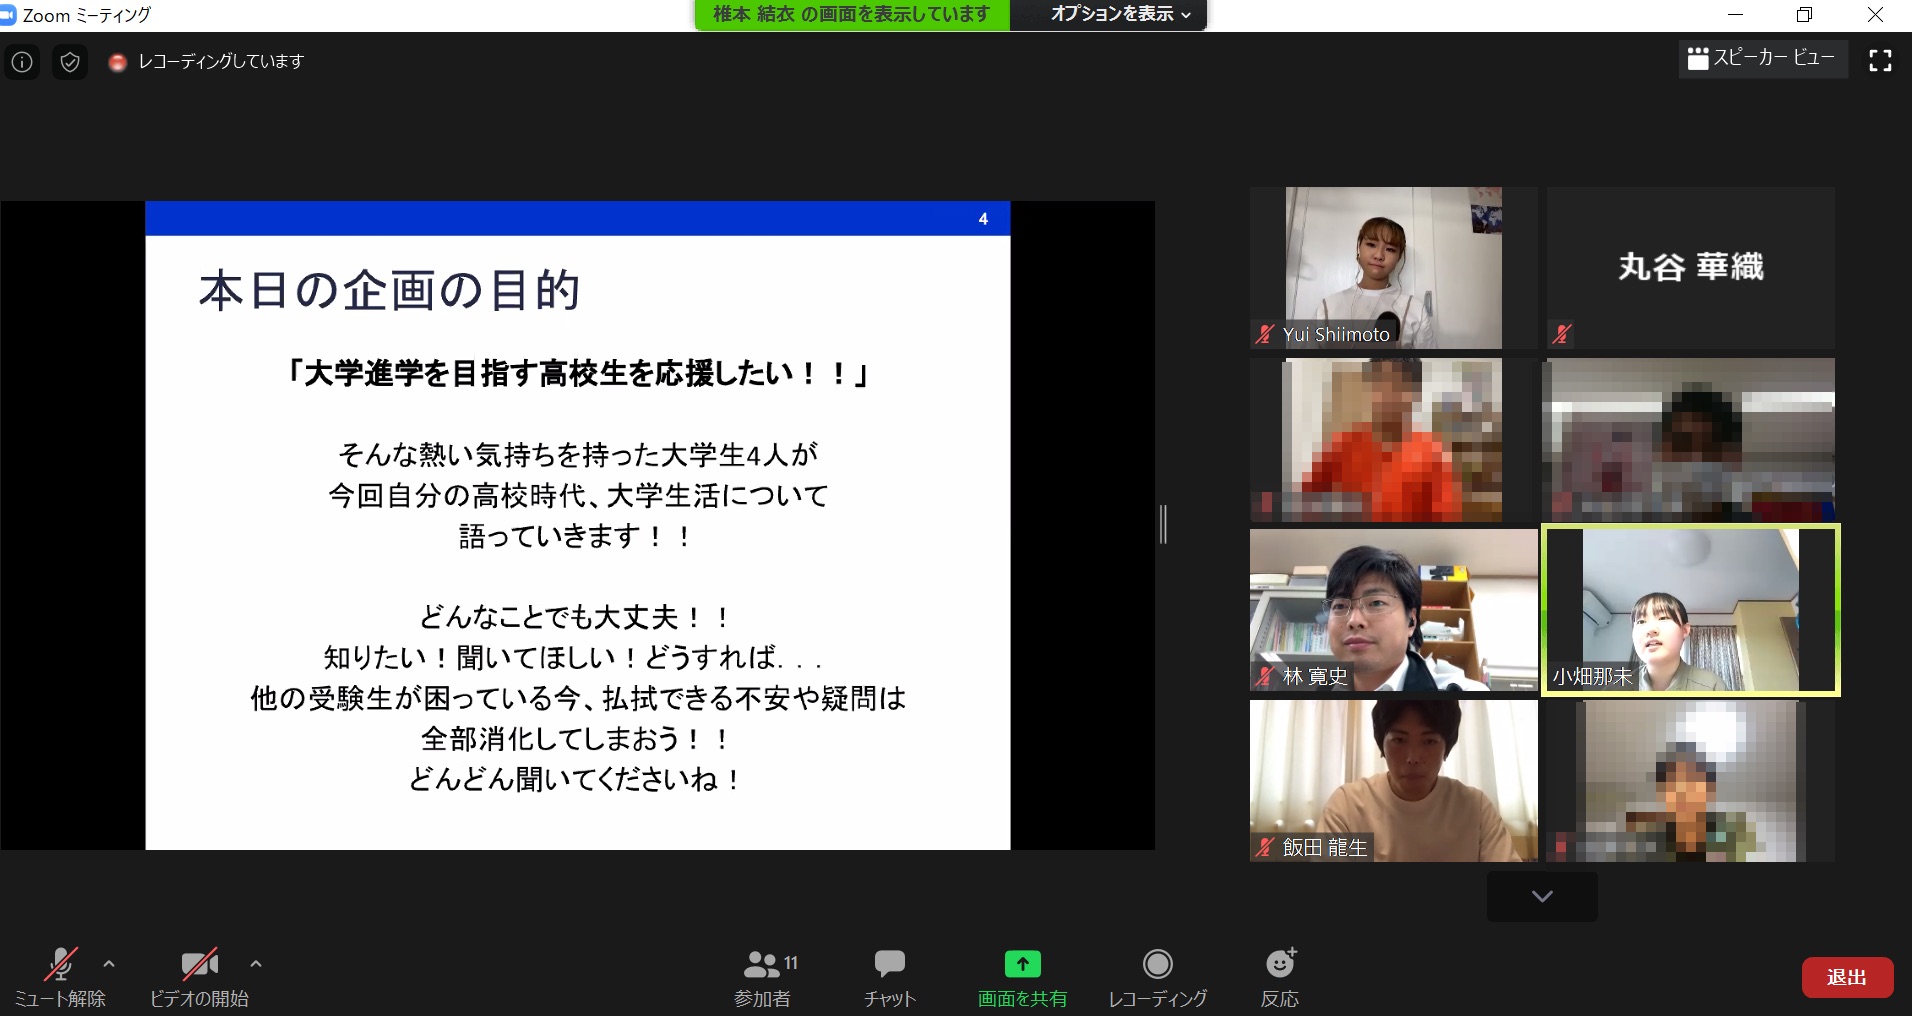 【開催報告】福岡県の希望が丘高校でオンライン企画を実施しました